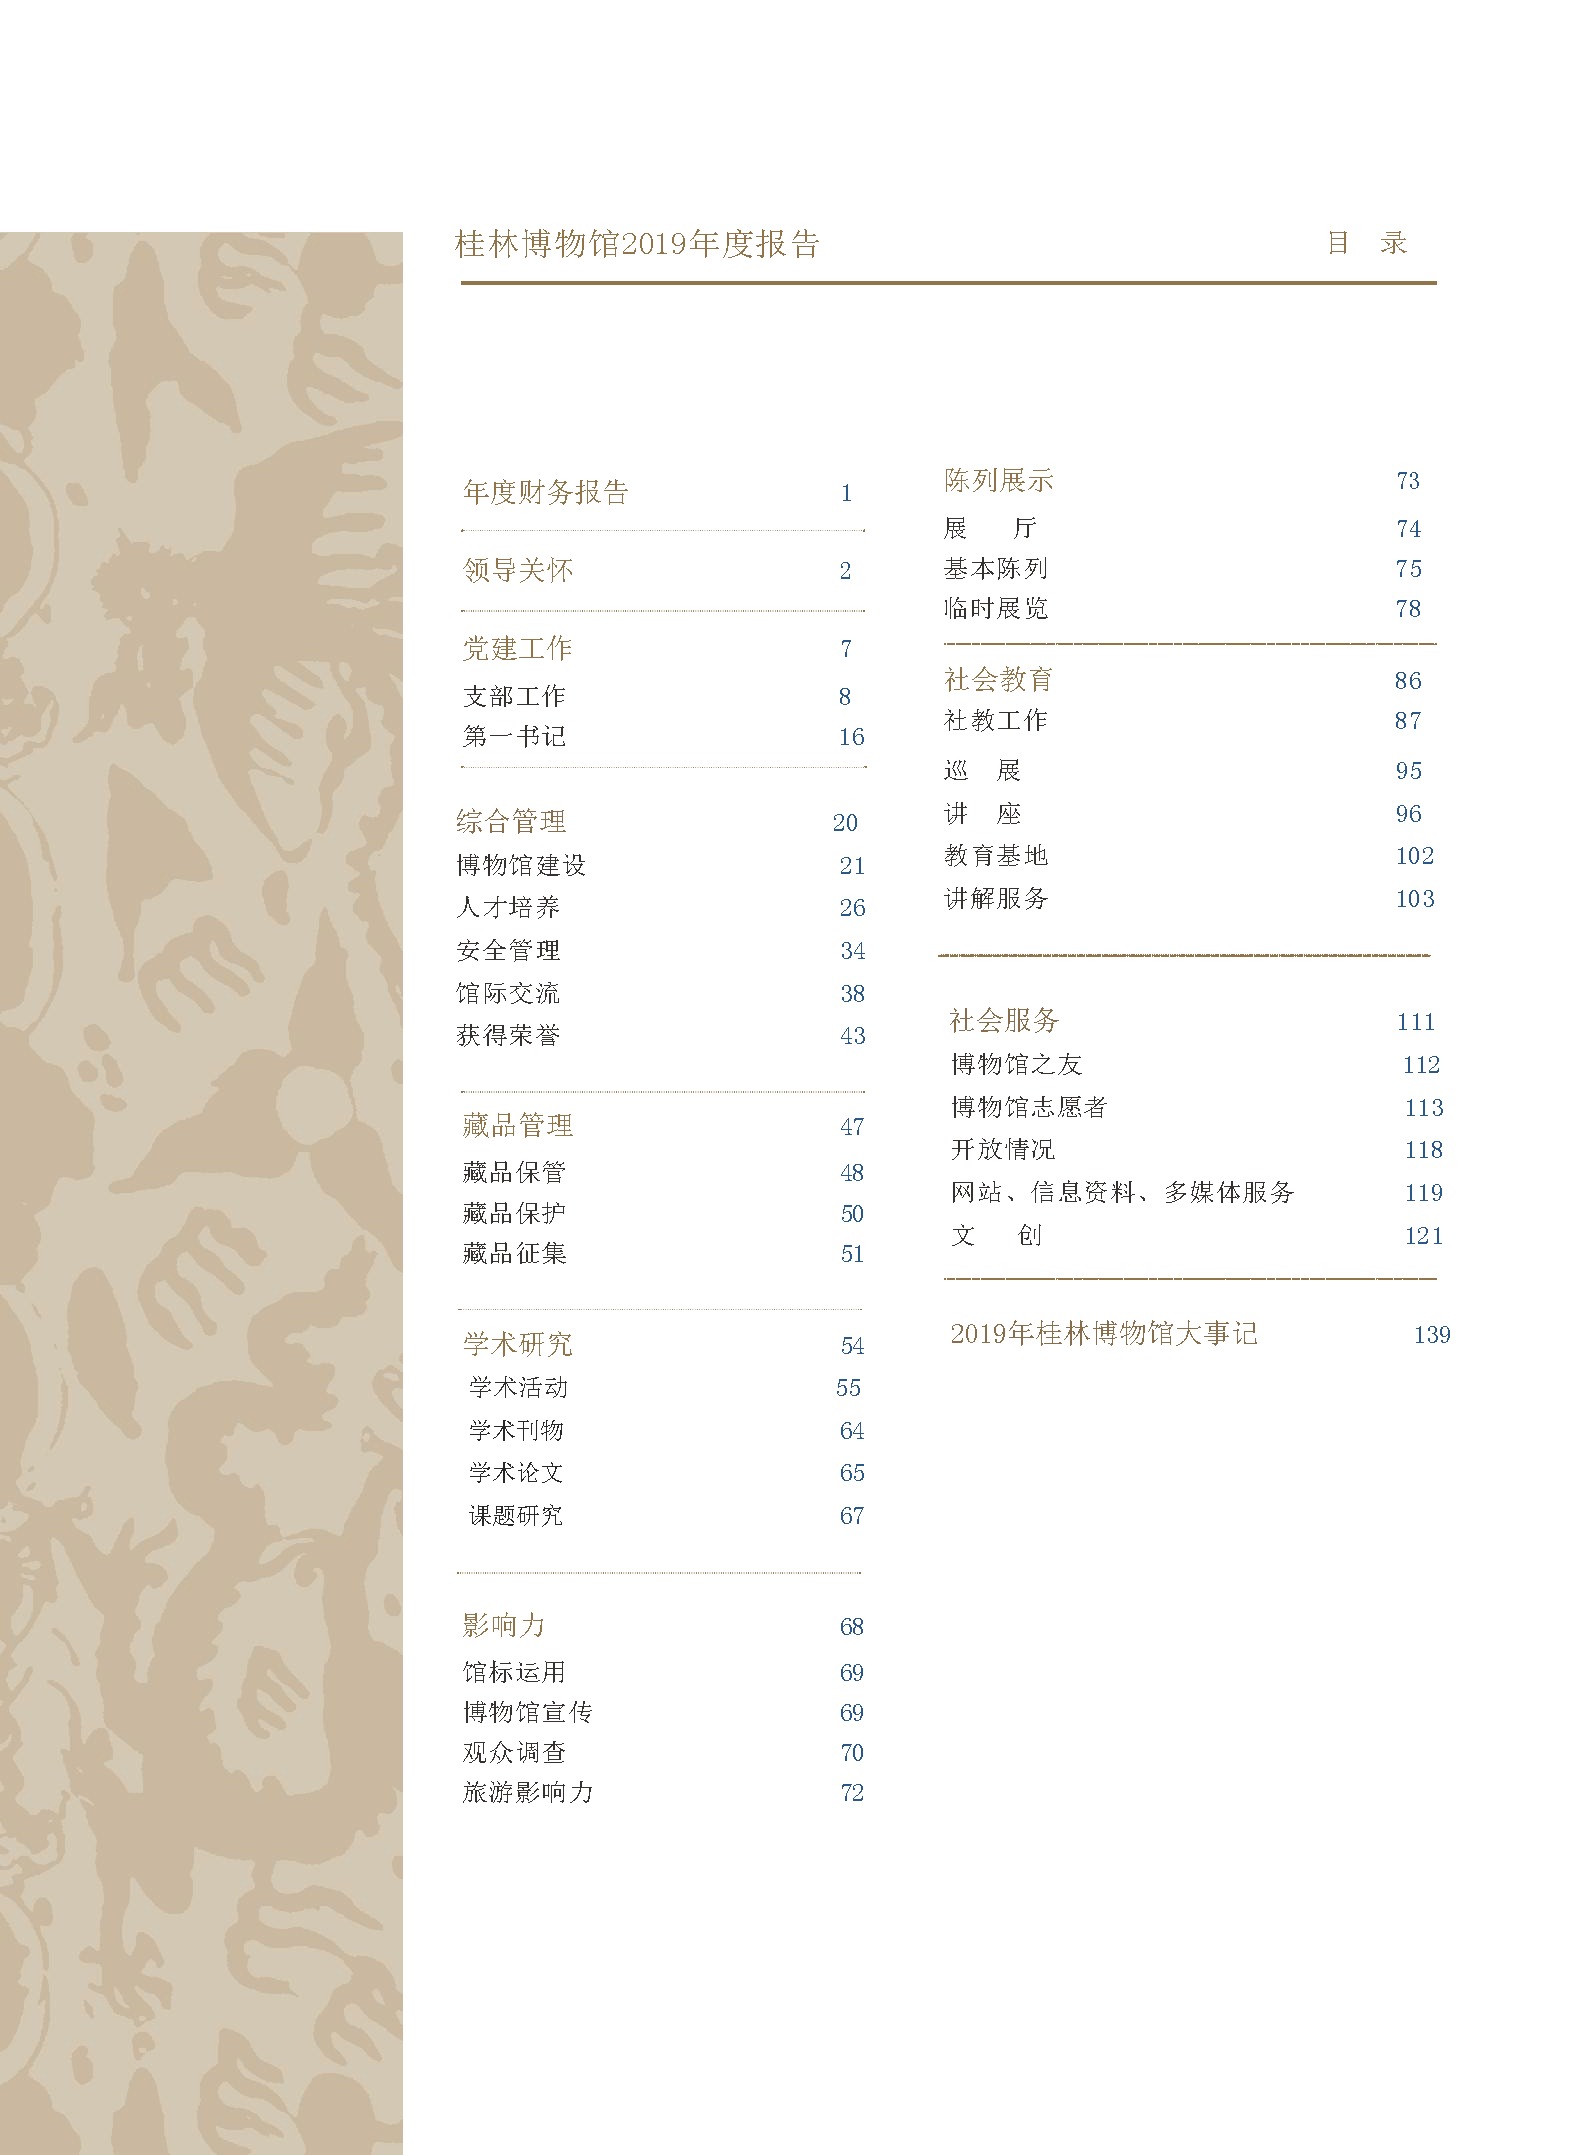 桂林博物馆2019年度报告.pdf_页面_002.png